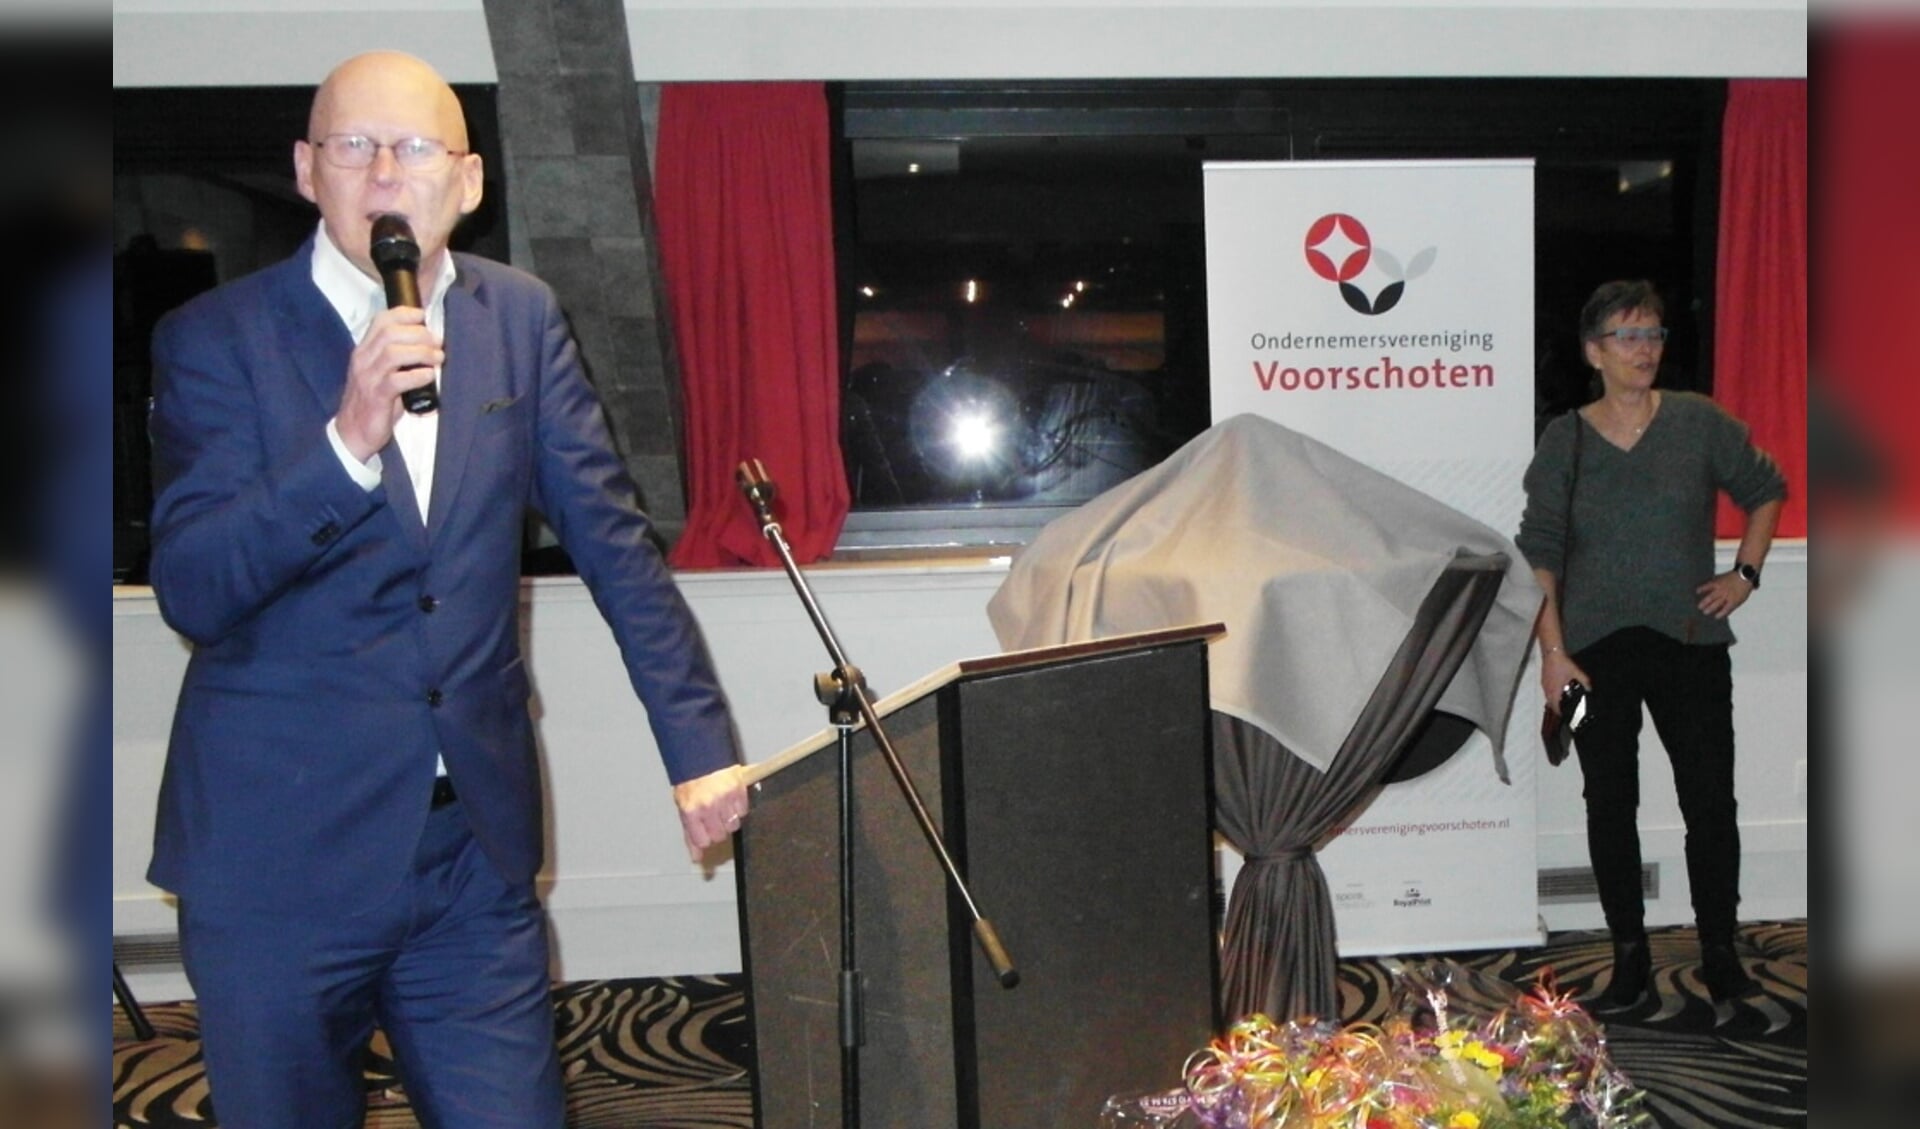 OVV voorzitter Frank ten Have is duidelijk: er moet meer ruimte komen voor ondernemers en ondernemen. Foto: VSK